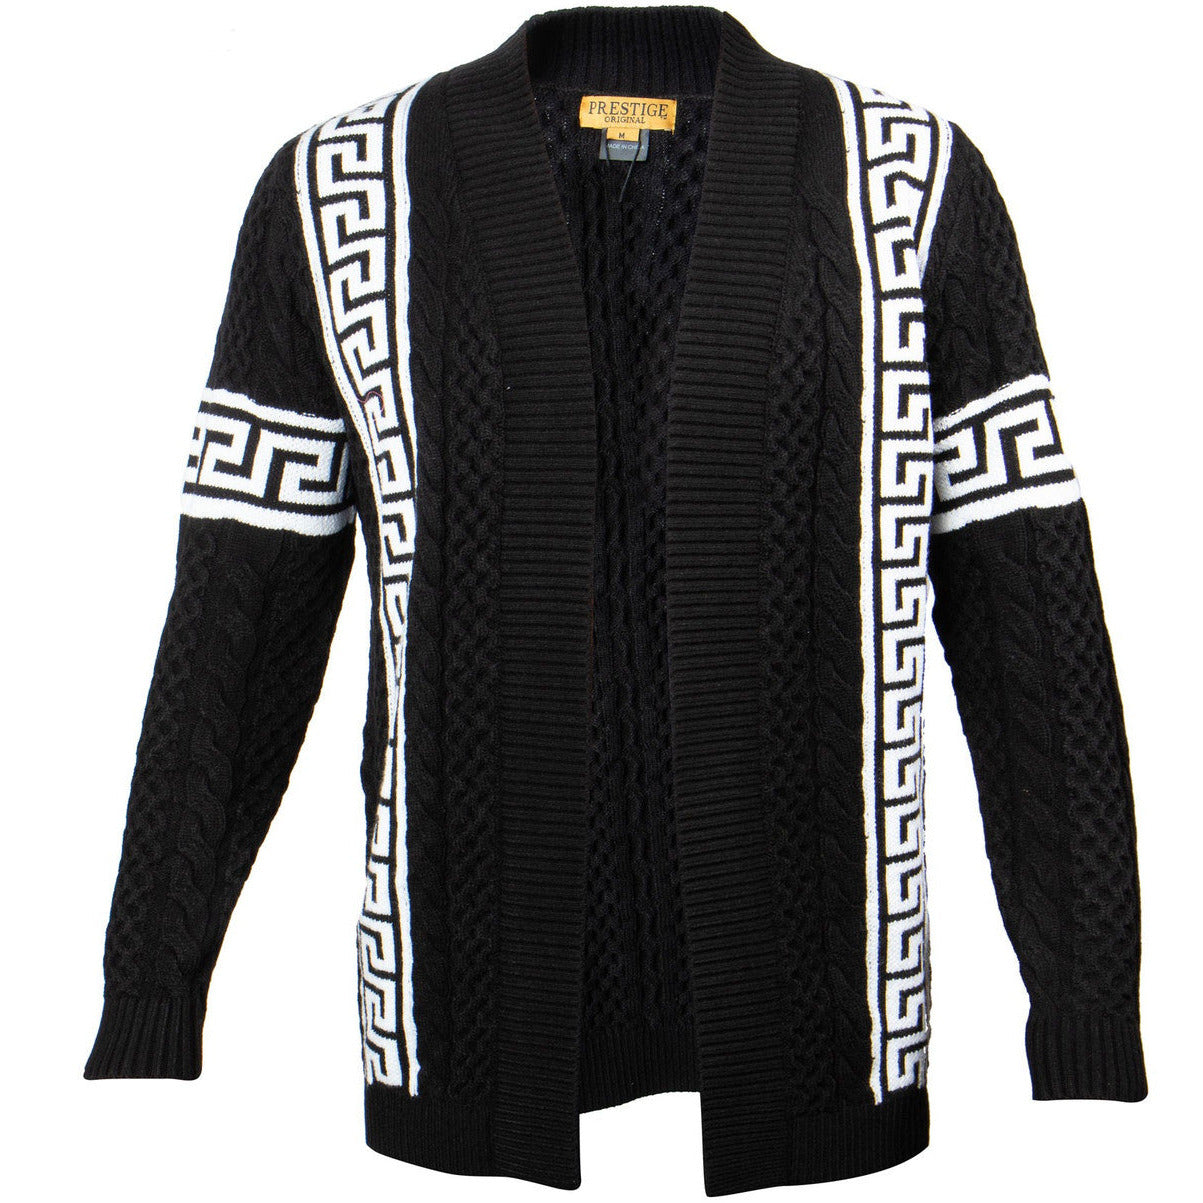 Prestige Black White Greek Key Trim Sweater Jacket